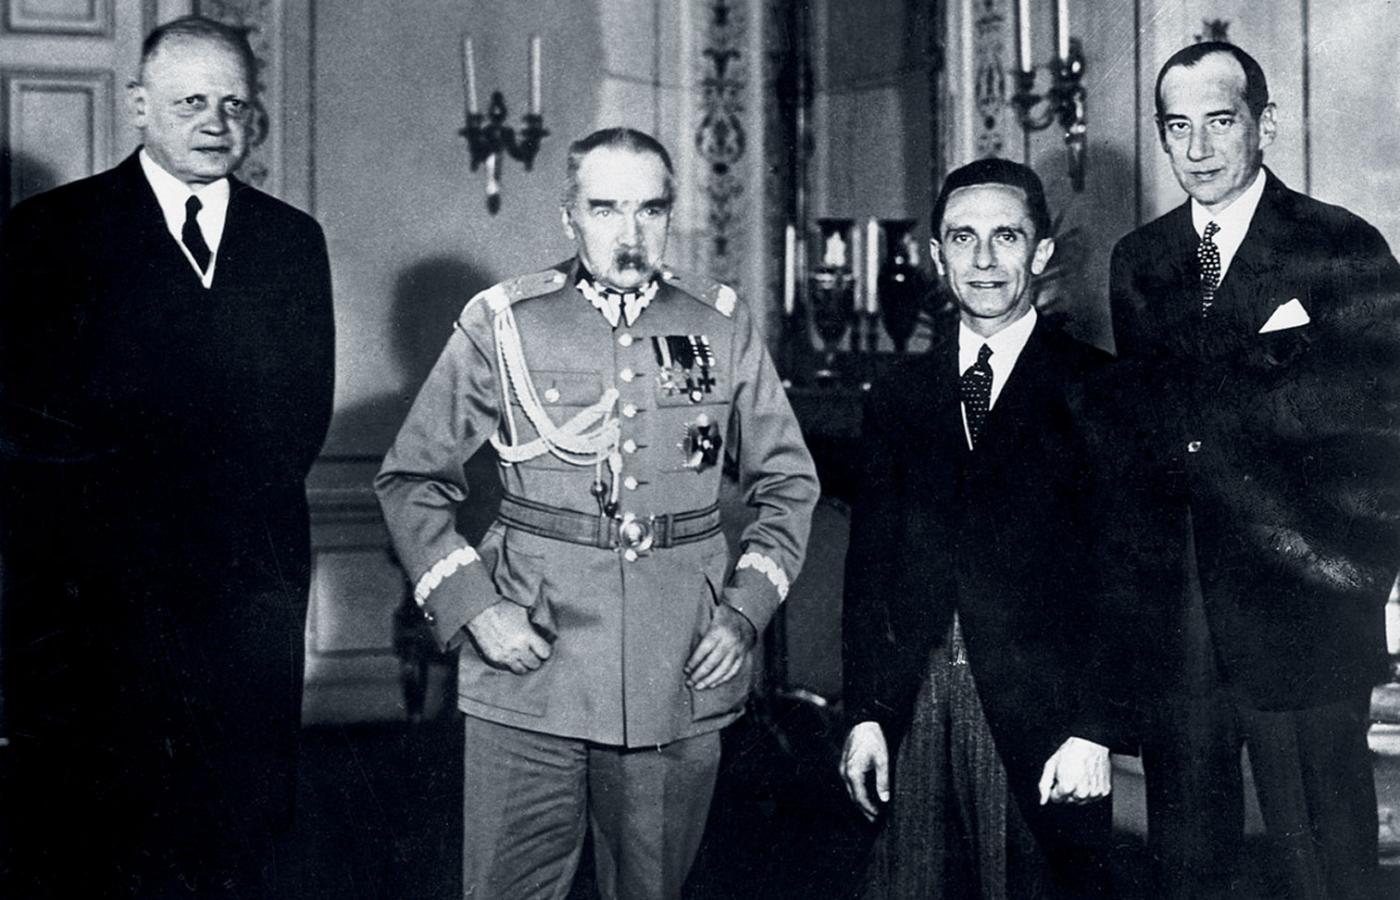 Po wykładzie Goebbelsa w Warszawie. Od lewej: ambasador von Moltke, marszałek Piłsudski, Joseph Goebbels, Józef Beck. 19 listopada 1934 r.